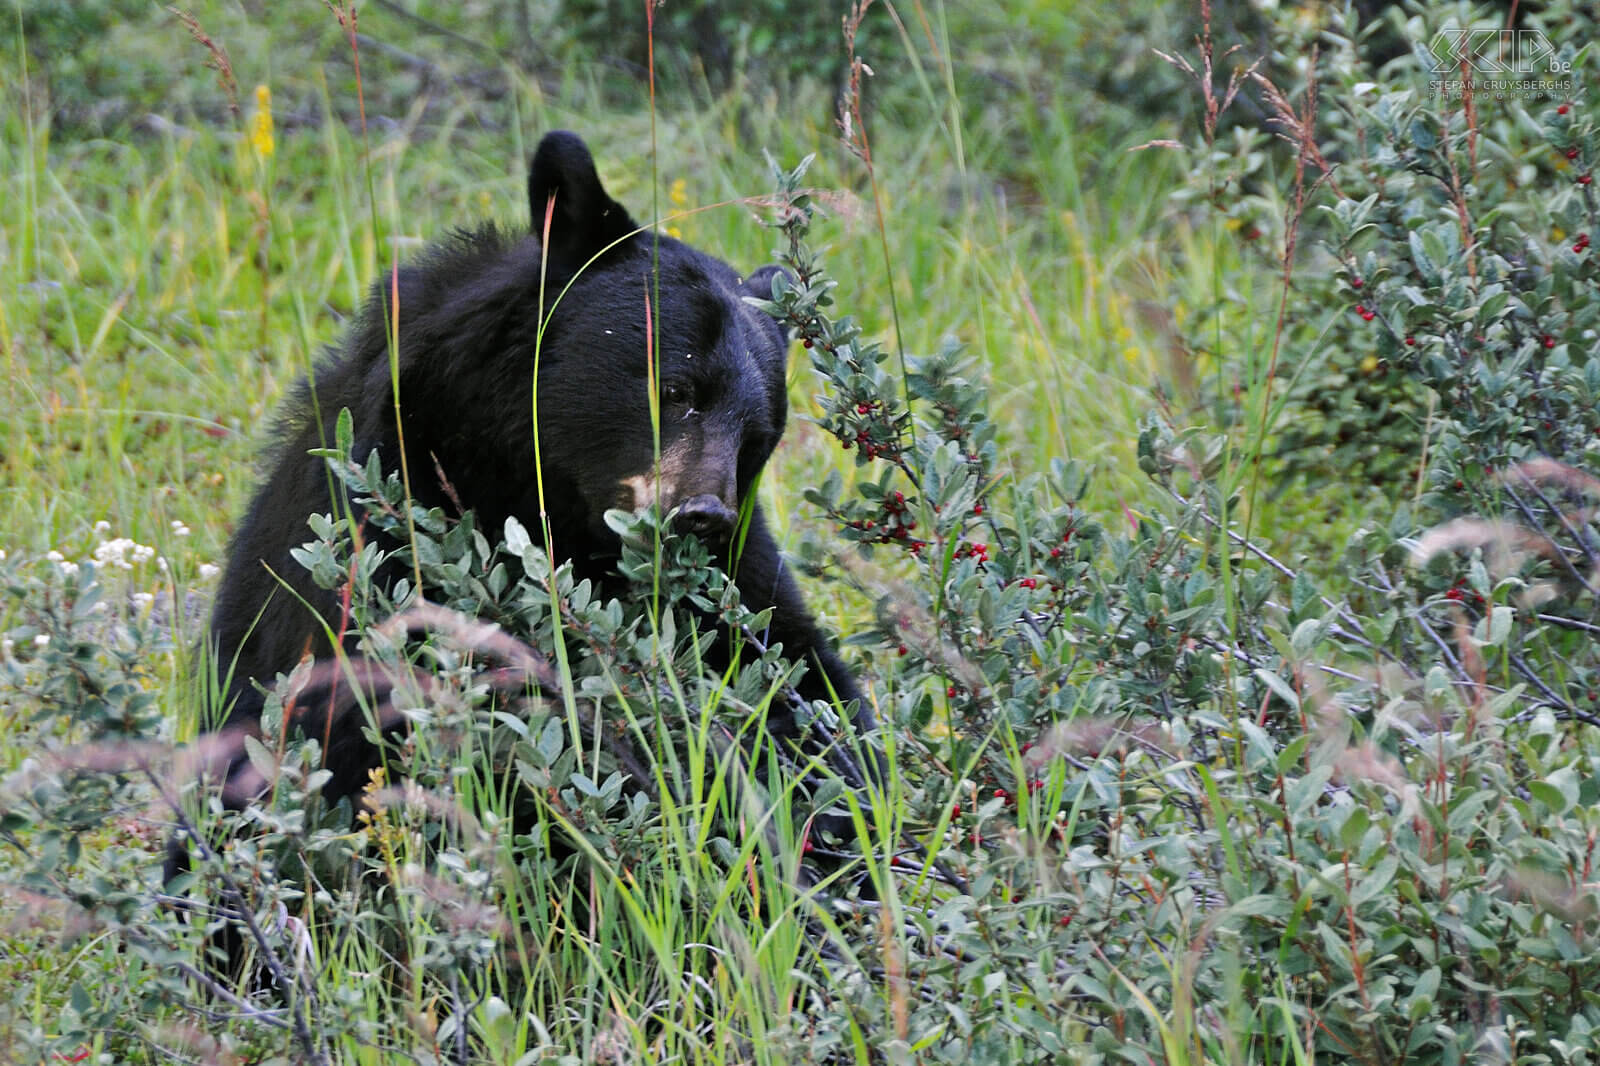 Jasper NP - Black bear A black bear (Ursus americanus) that is eating berries. Stefan Cruysberghs